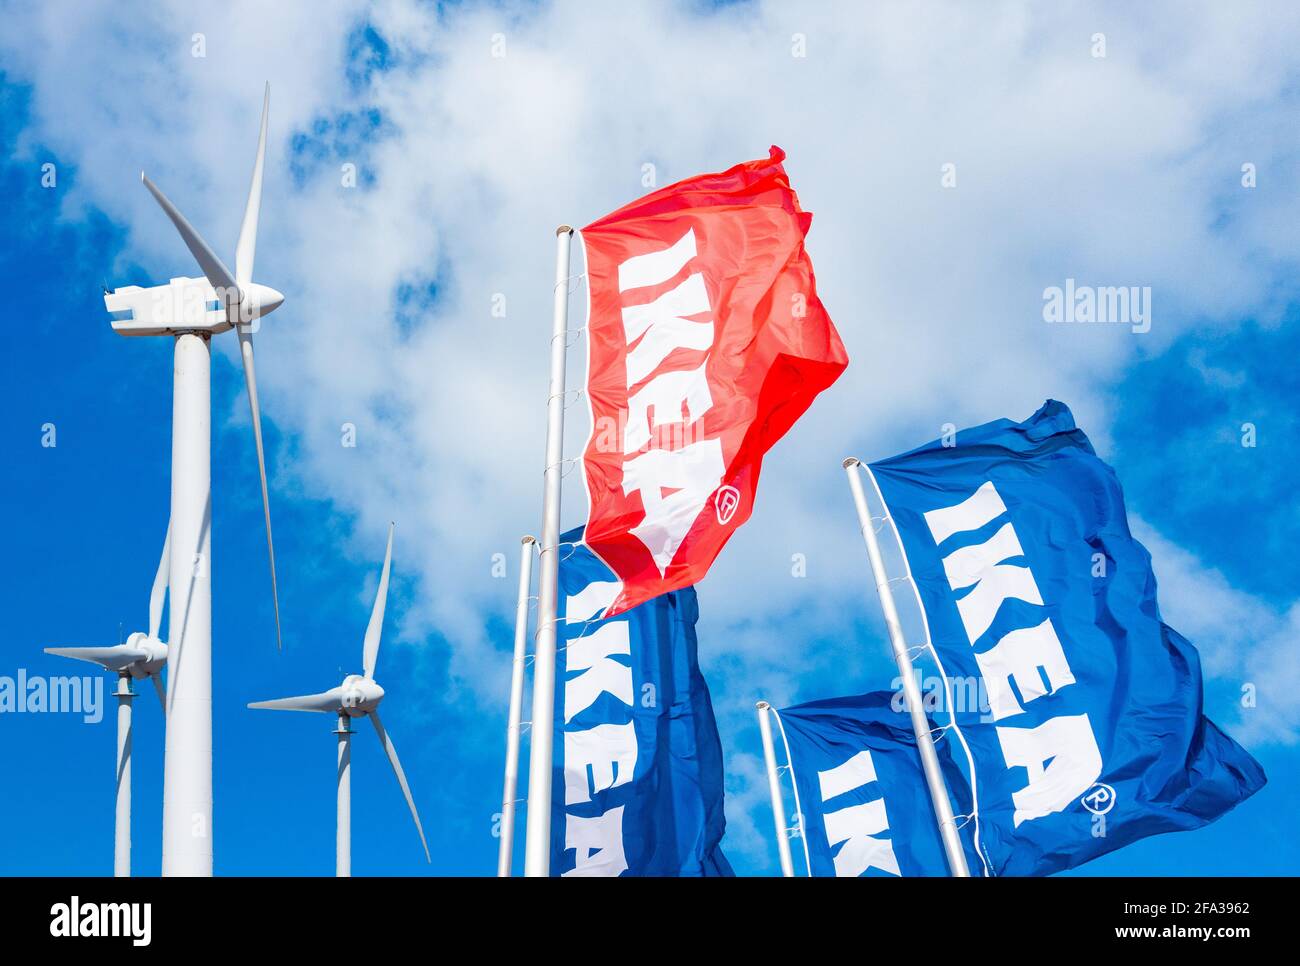 Turbine eoliche e bandiere Ikea composito. IKEA prevede di costruire parchi eolici e solari. Foto Stock